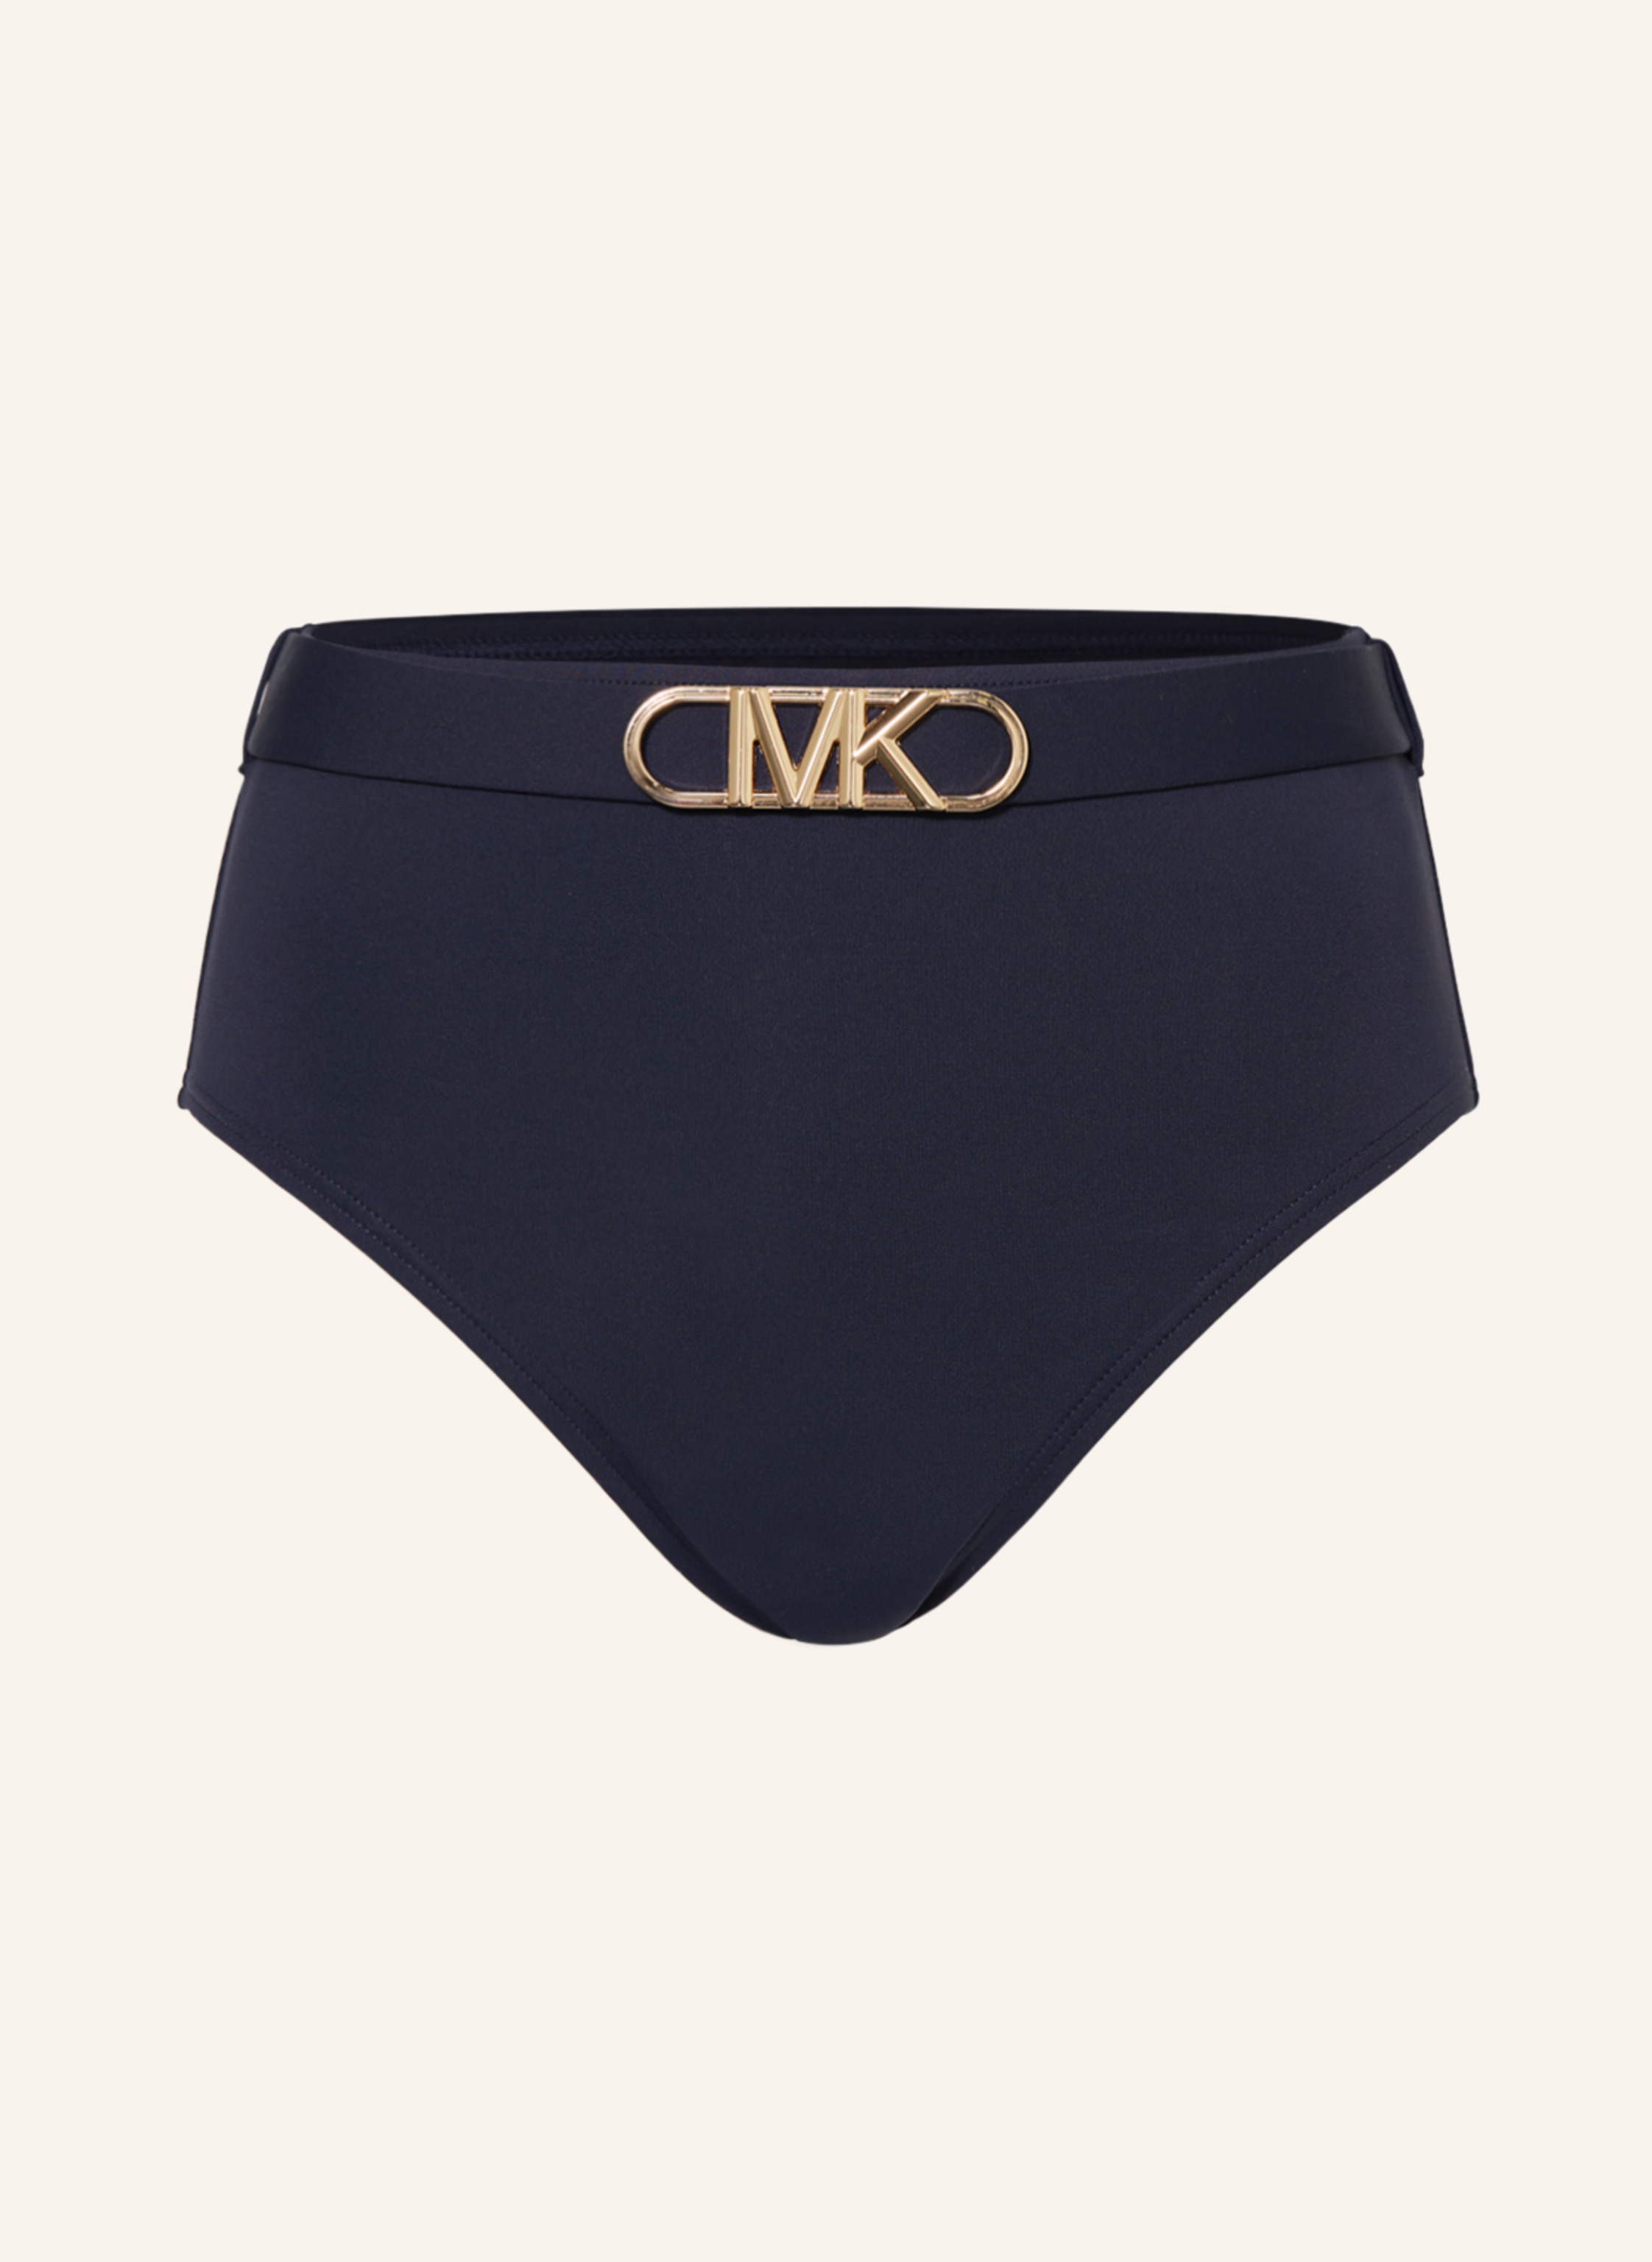 MICHAEL KORS High-waist bikini bottoms SOLIDS in dark blue | Breuninger